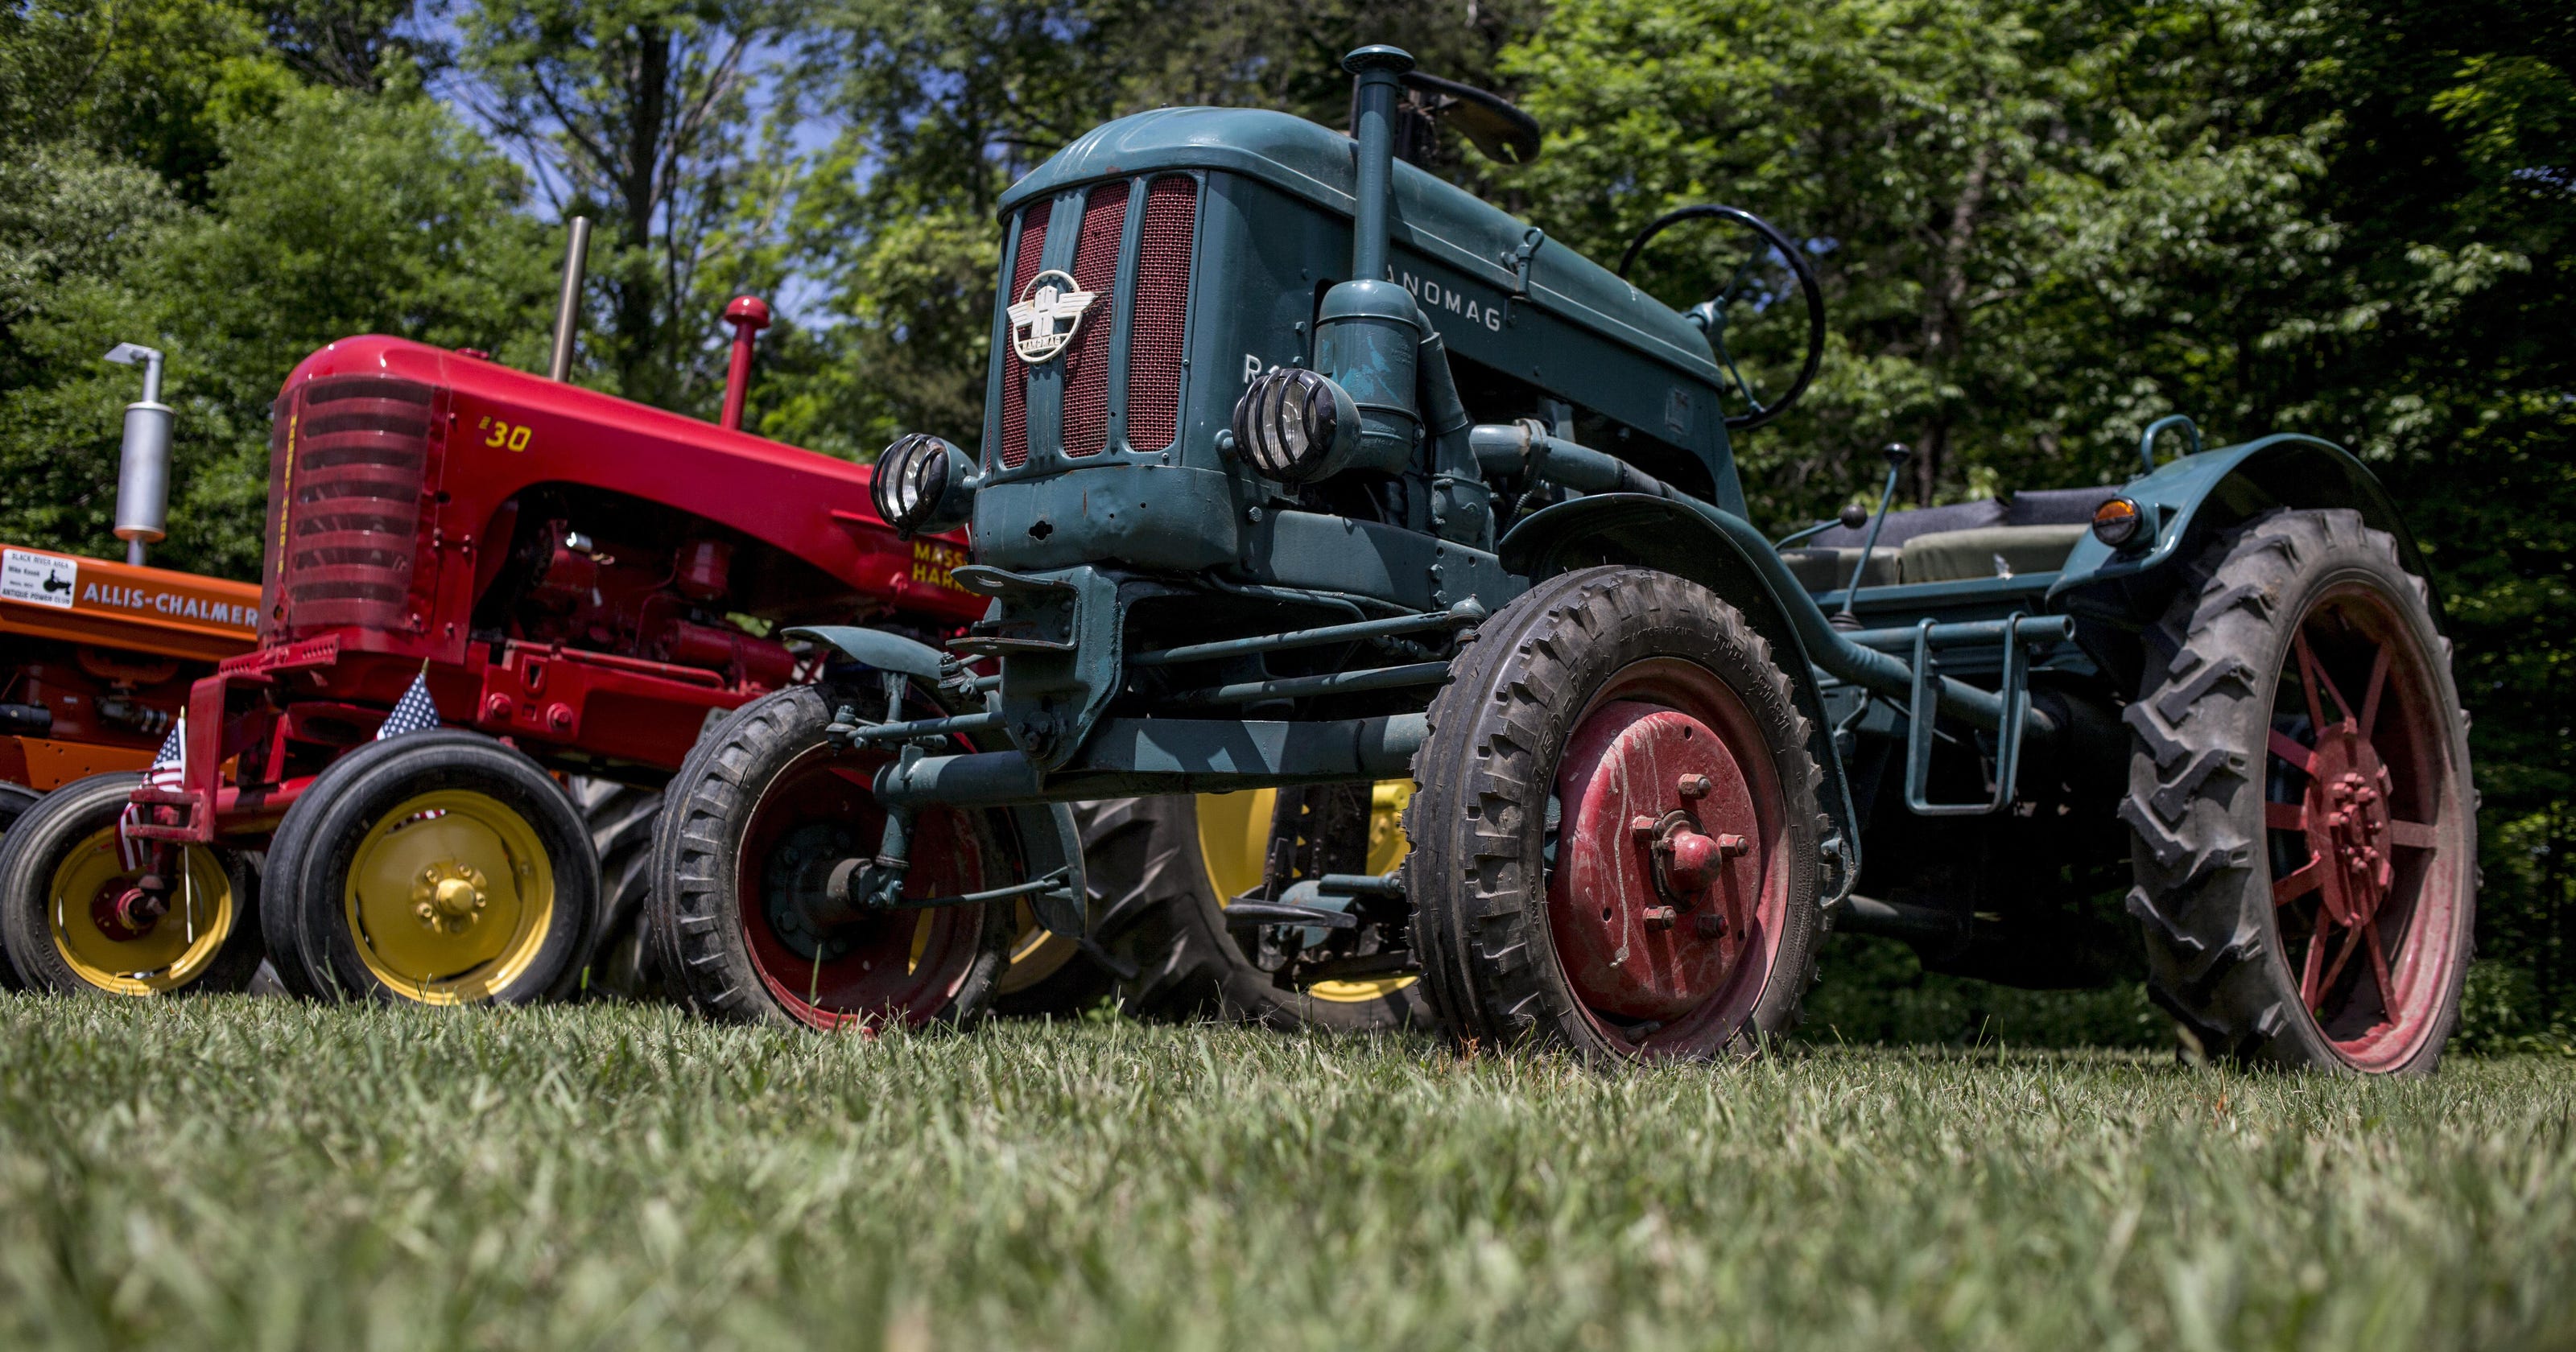 June 17 Lexington A&W Antique Tractor Show